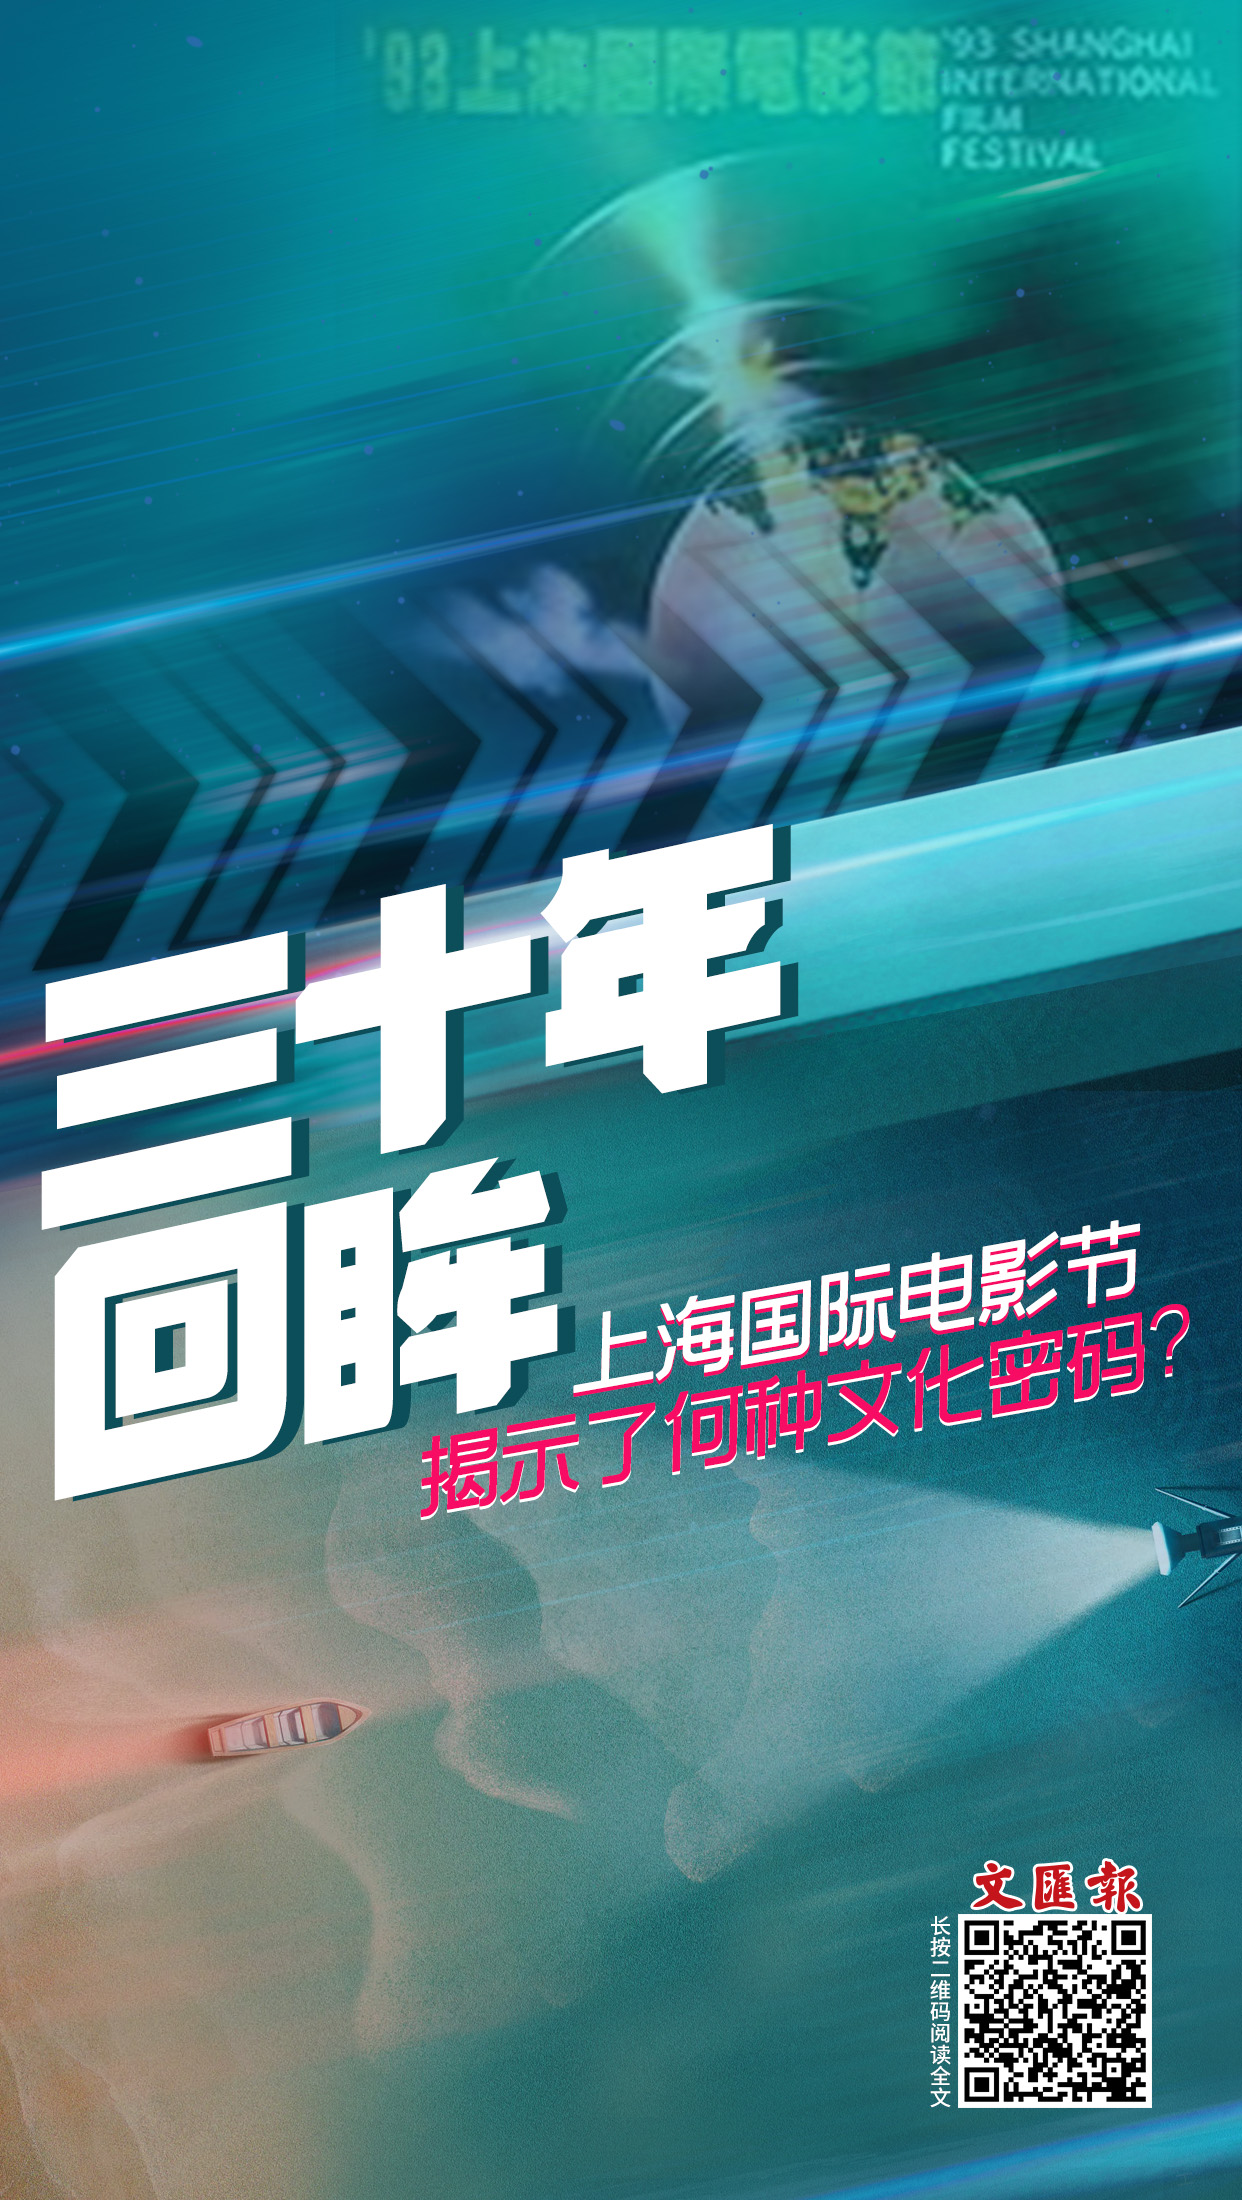 海报│上海国际电影节揭示了何种文化密码?